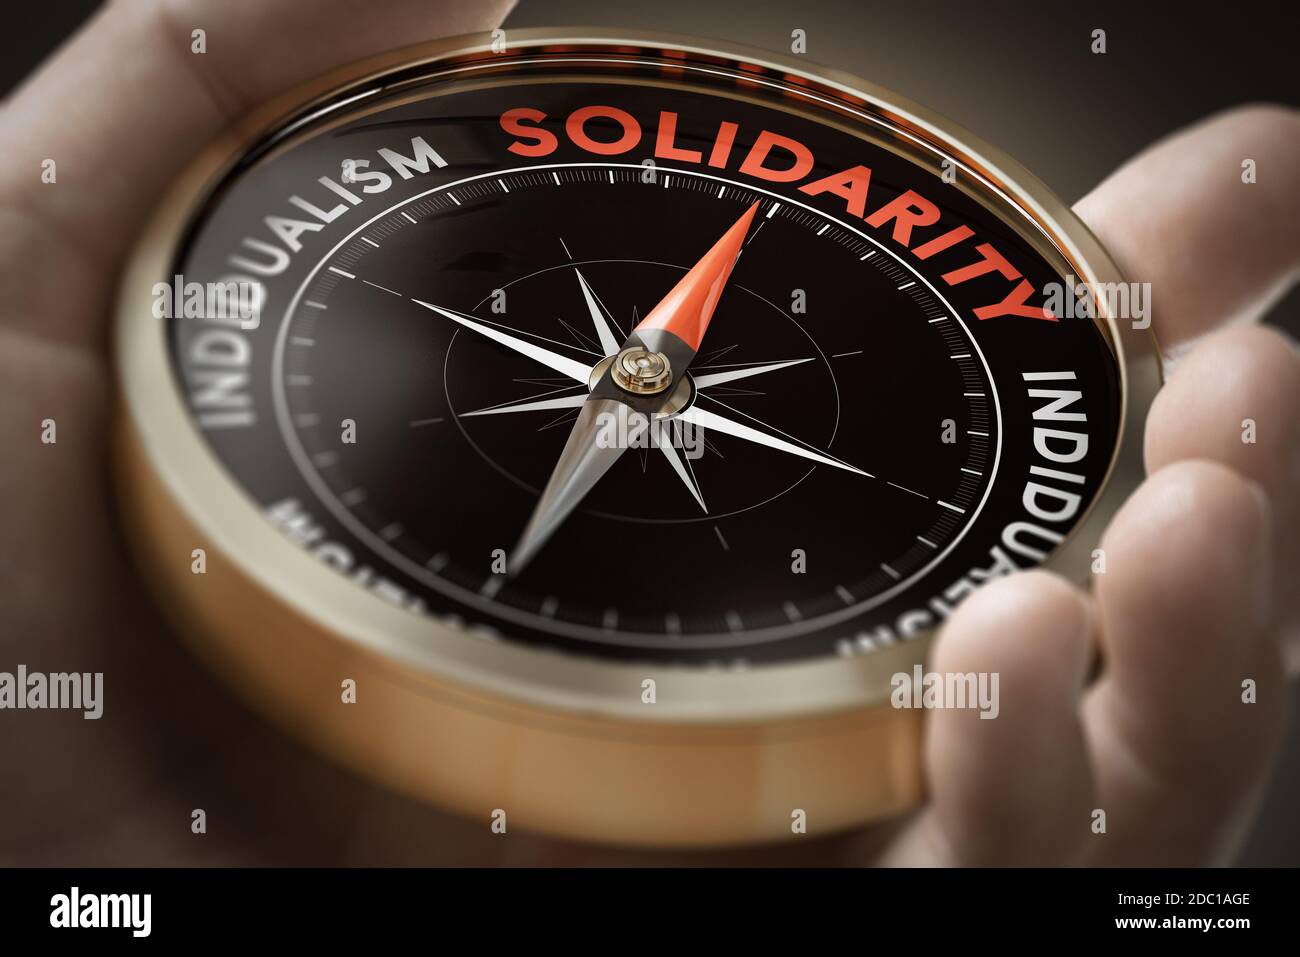 Homme main tenant la boussole avec l'aiguille pointant le mot solidarité. Concept de sociologie. Image composite entre une photographie manuelle et un arrière-plan 3D. Banque D'Images